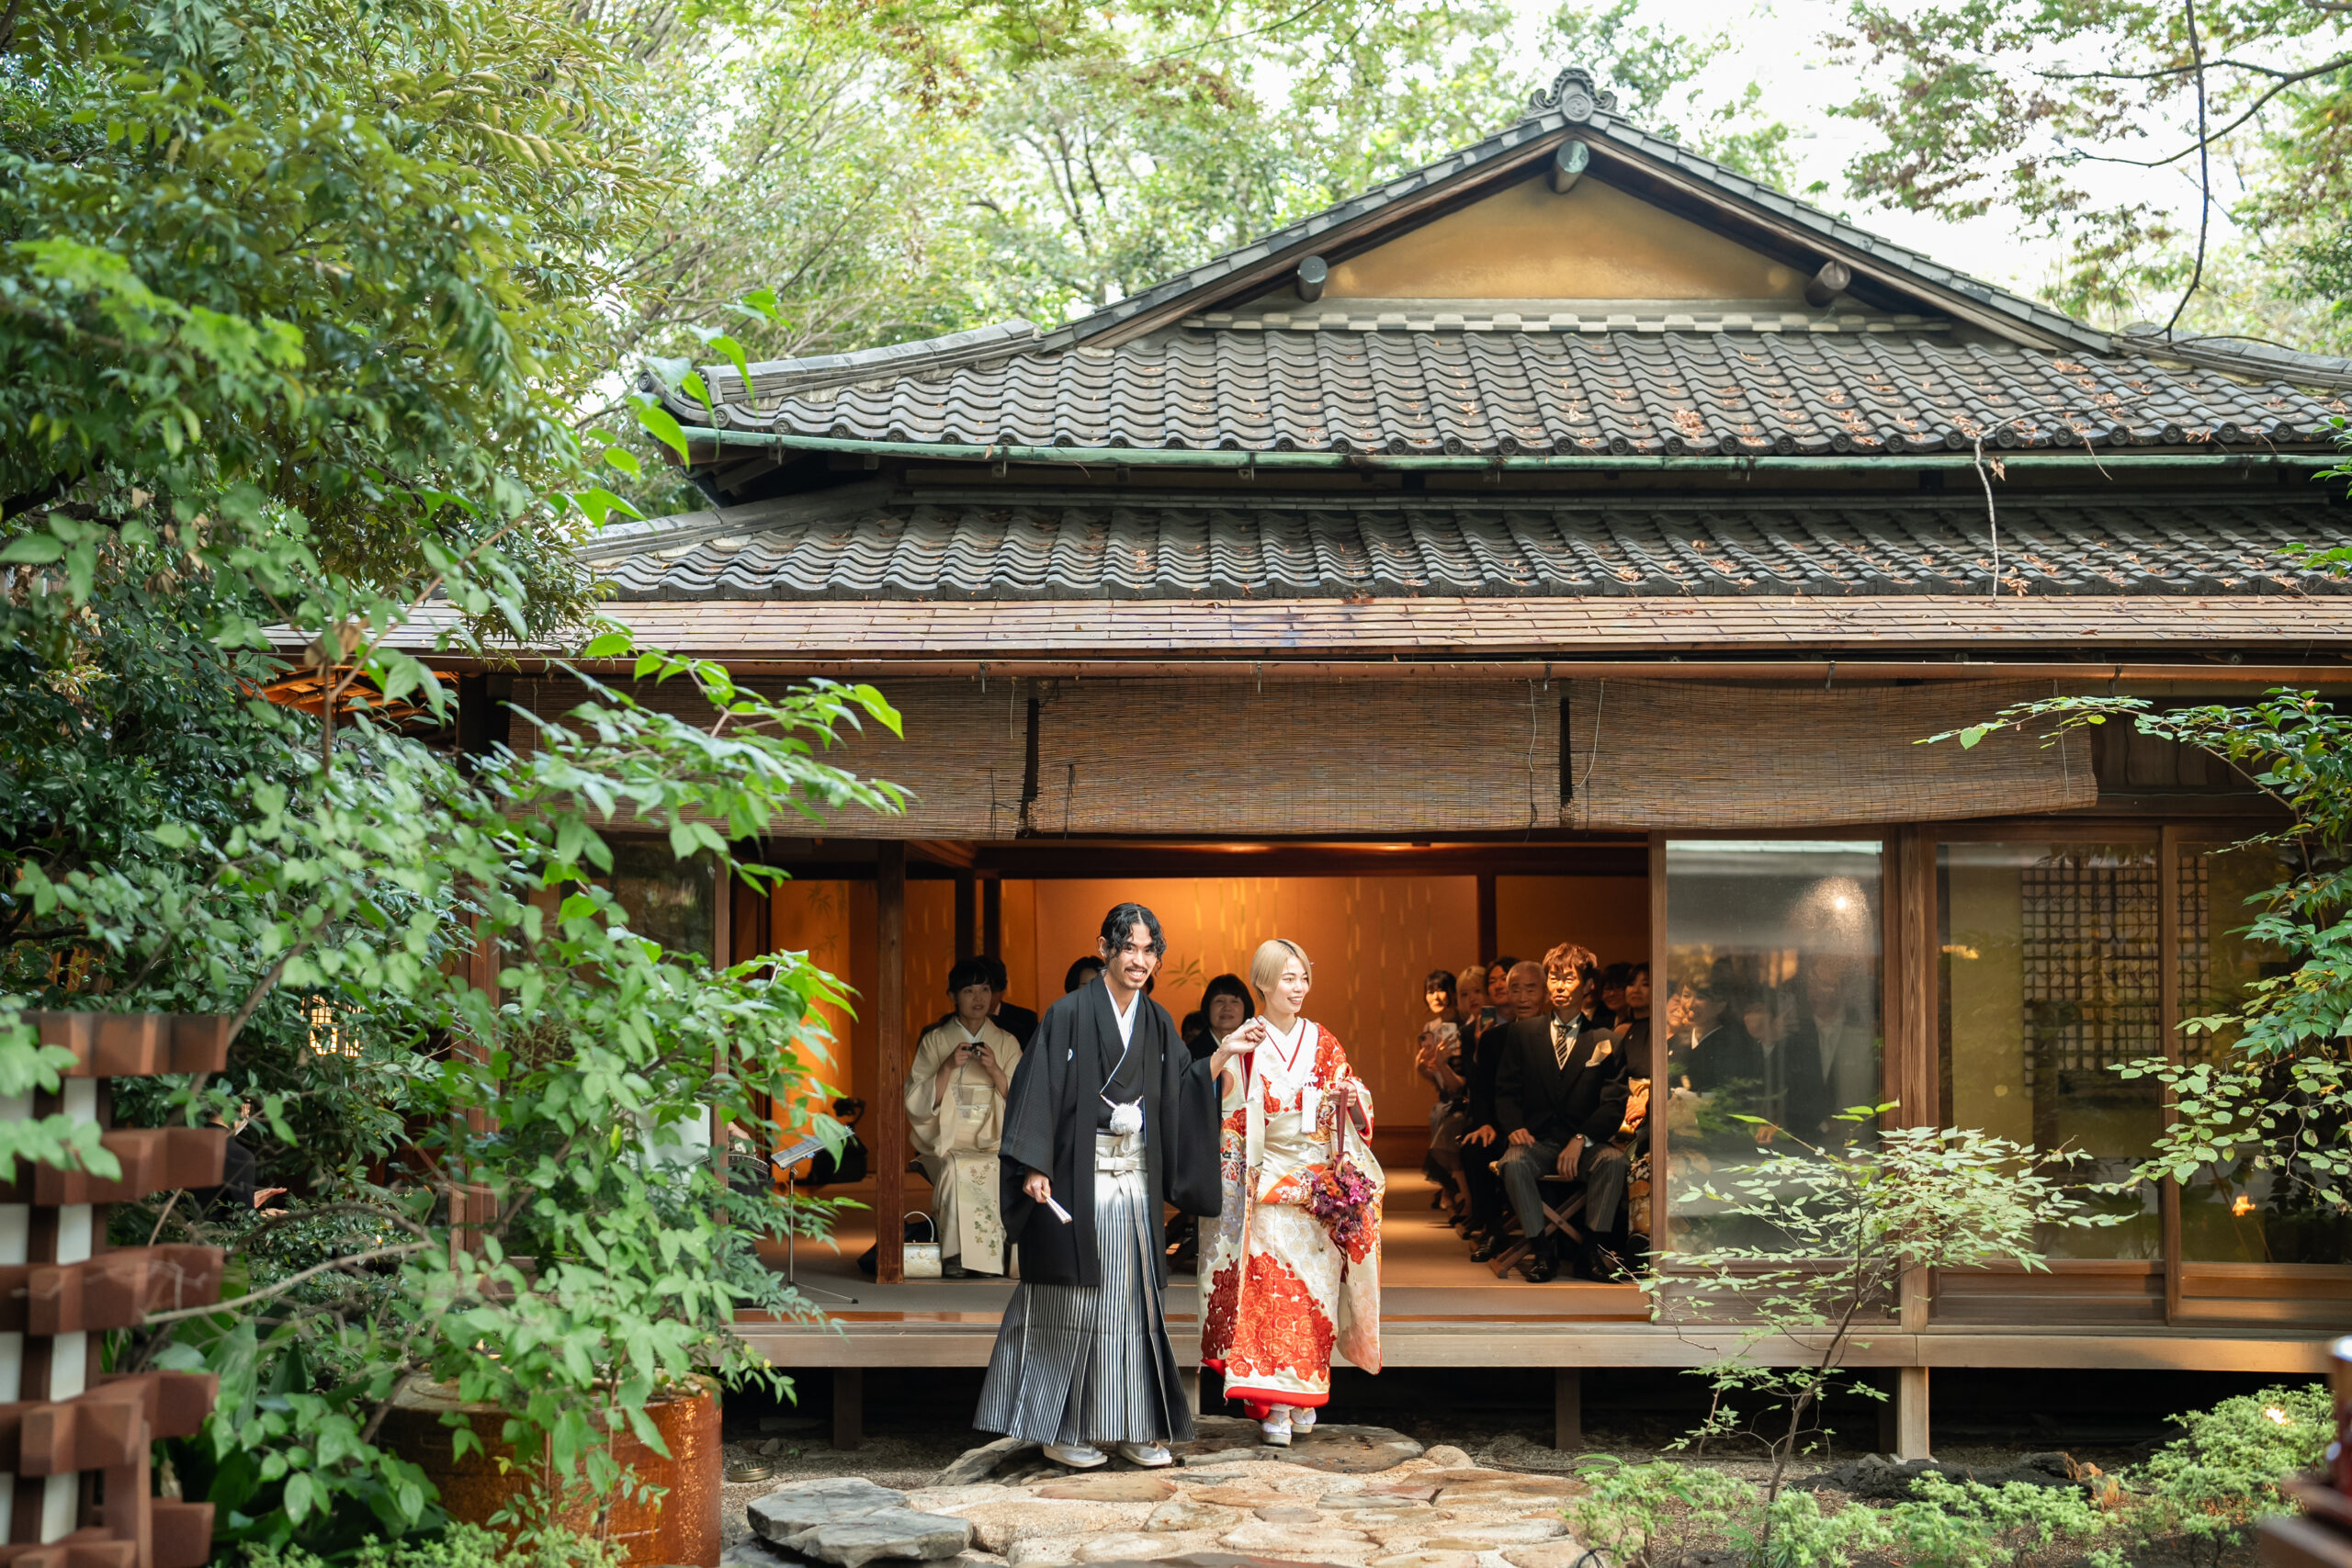 四季を感じる緑溢れる名古屋の結婚式会場、料亭 河文でお召しいただく黒刺子と松竹梅の刺繍が華やかな色打掛